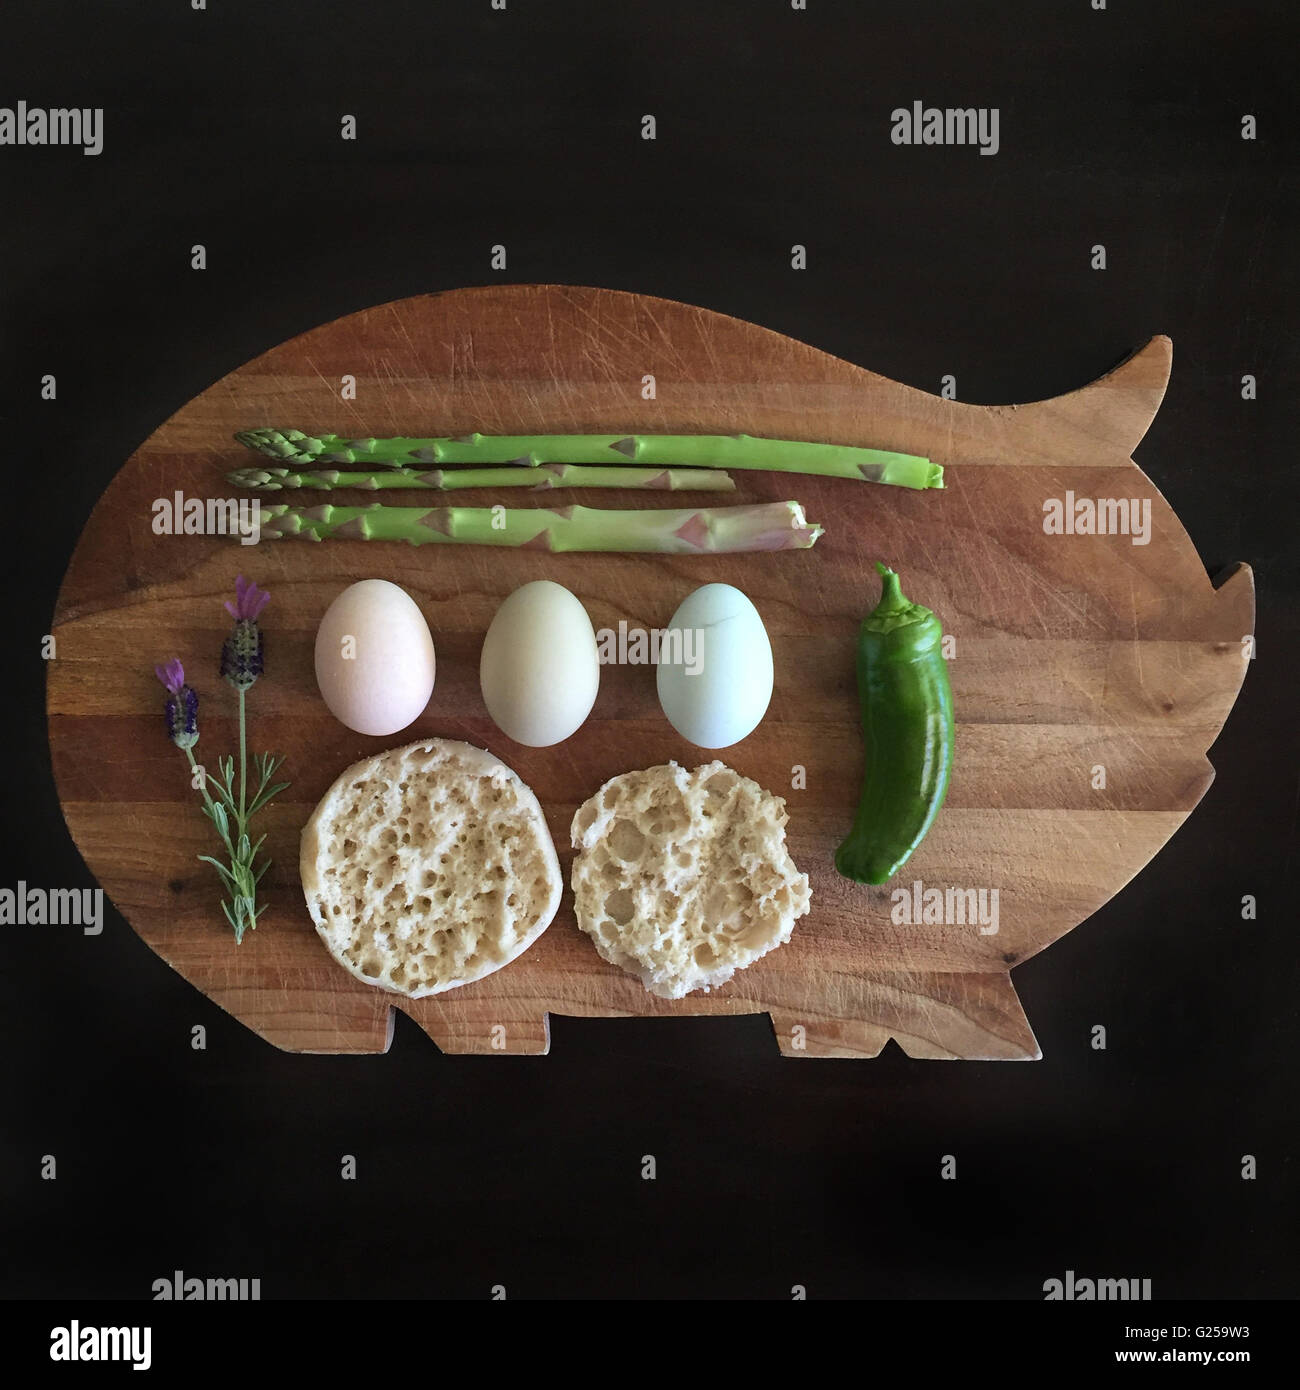 Les asperges, le piment, les œufs et un muffin en forme de cochon à découper Banque D'Images